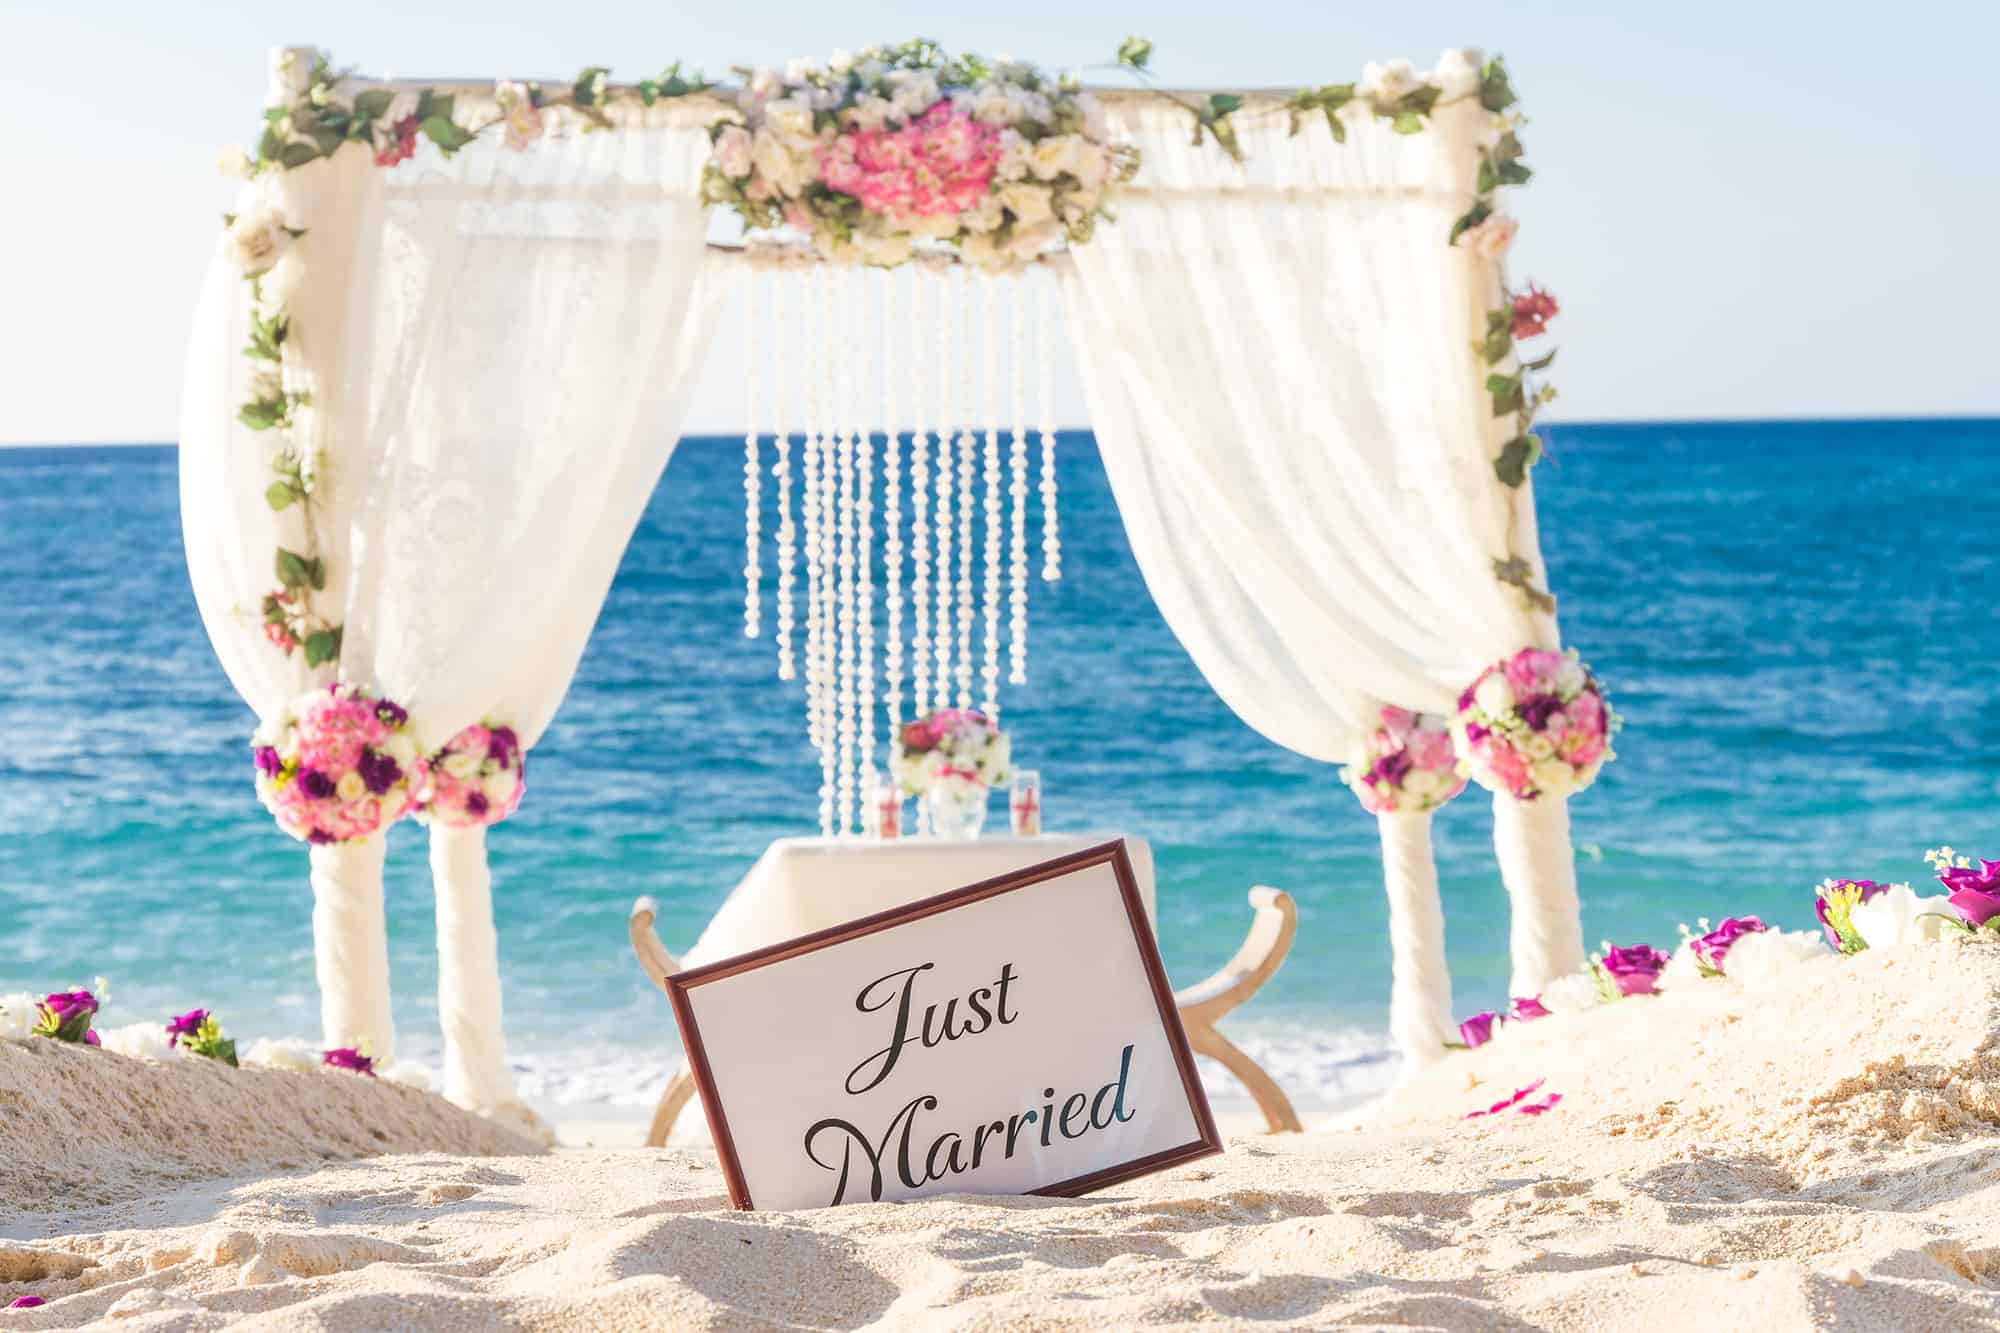 cheap wedding arch ideas for beach